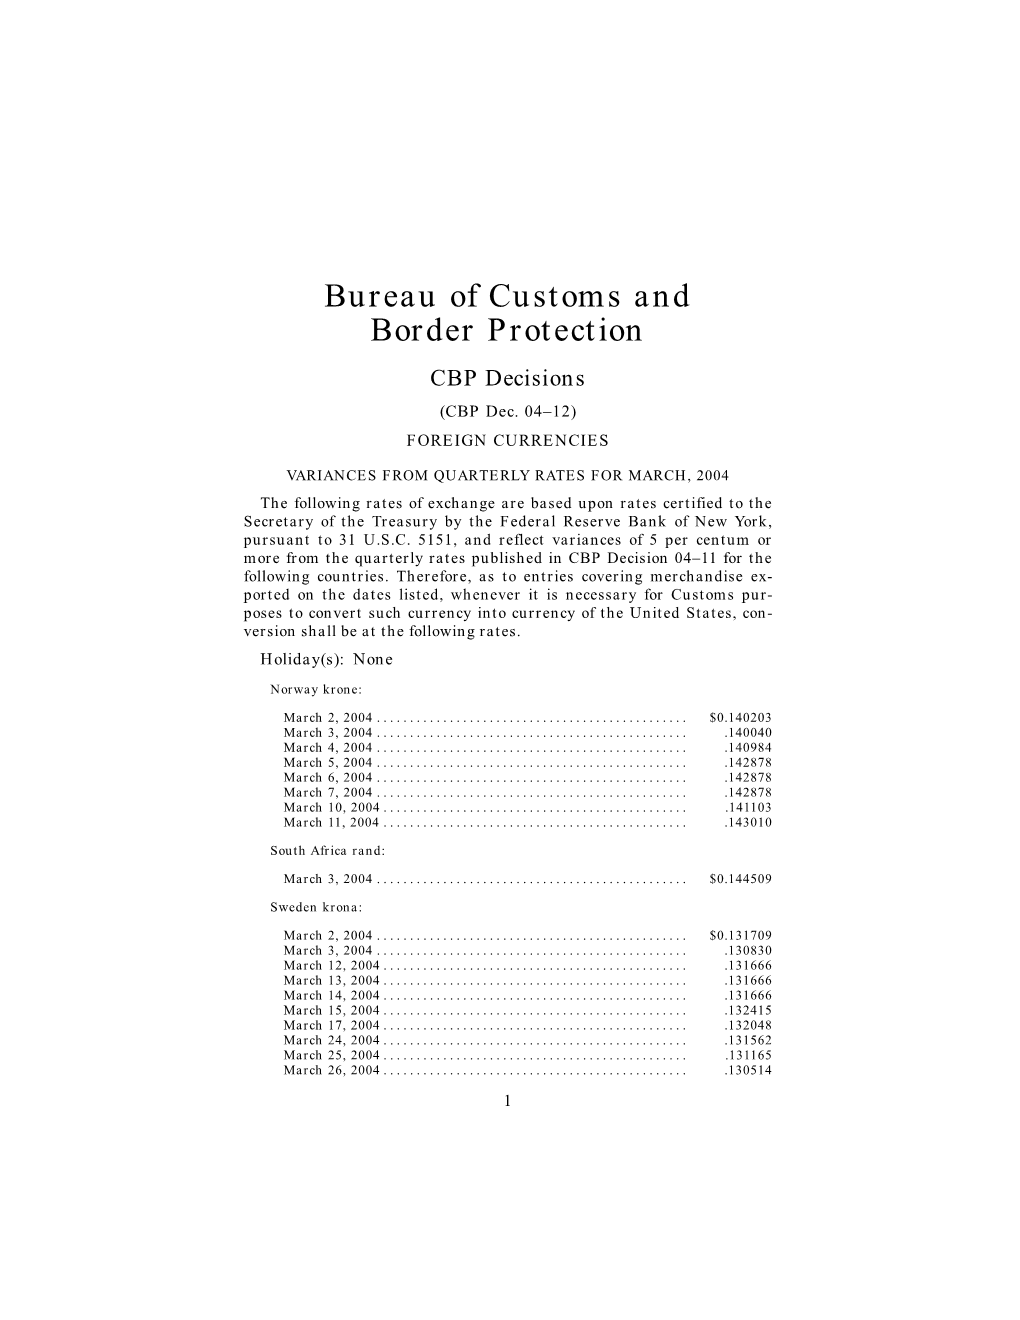 Bureau of Customs and Border Protection CBP Decisions (CBP Dec